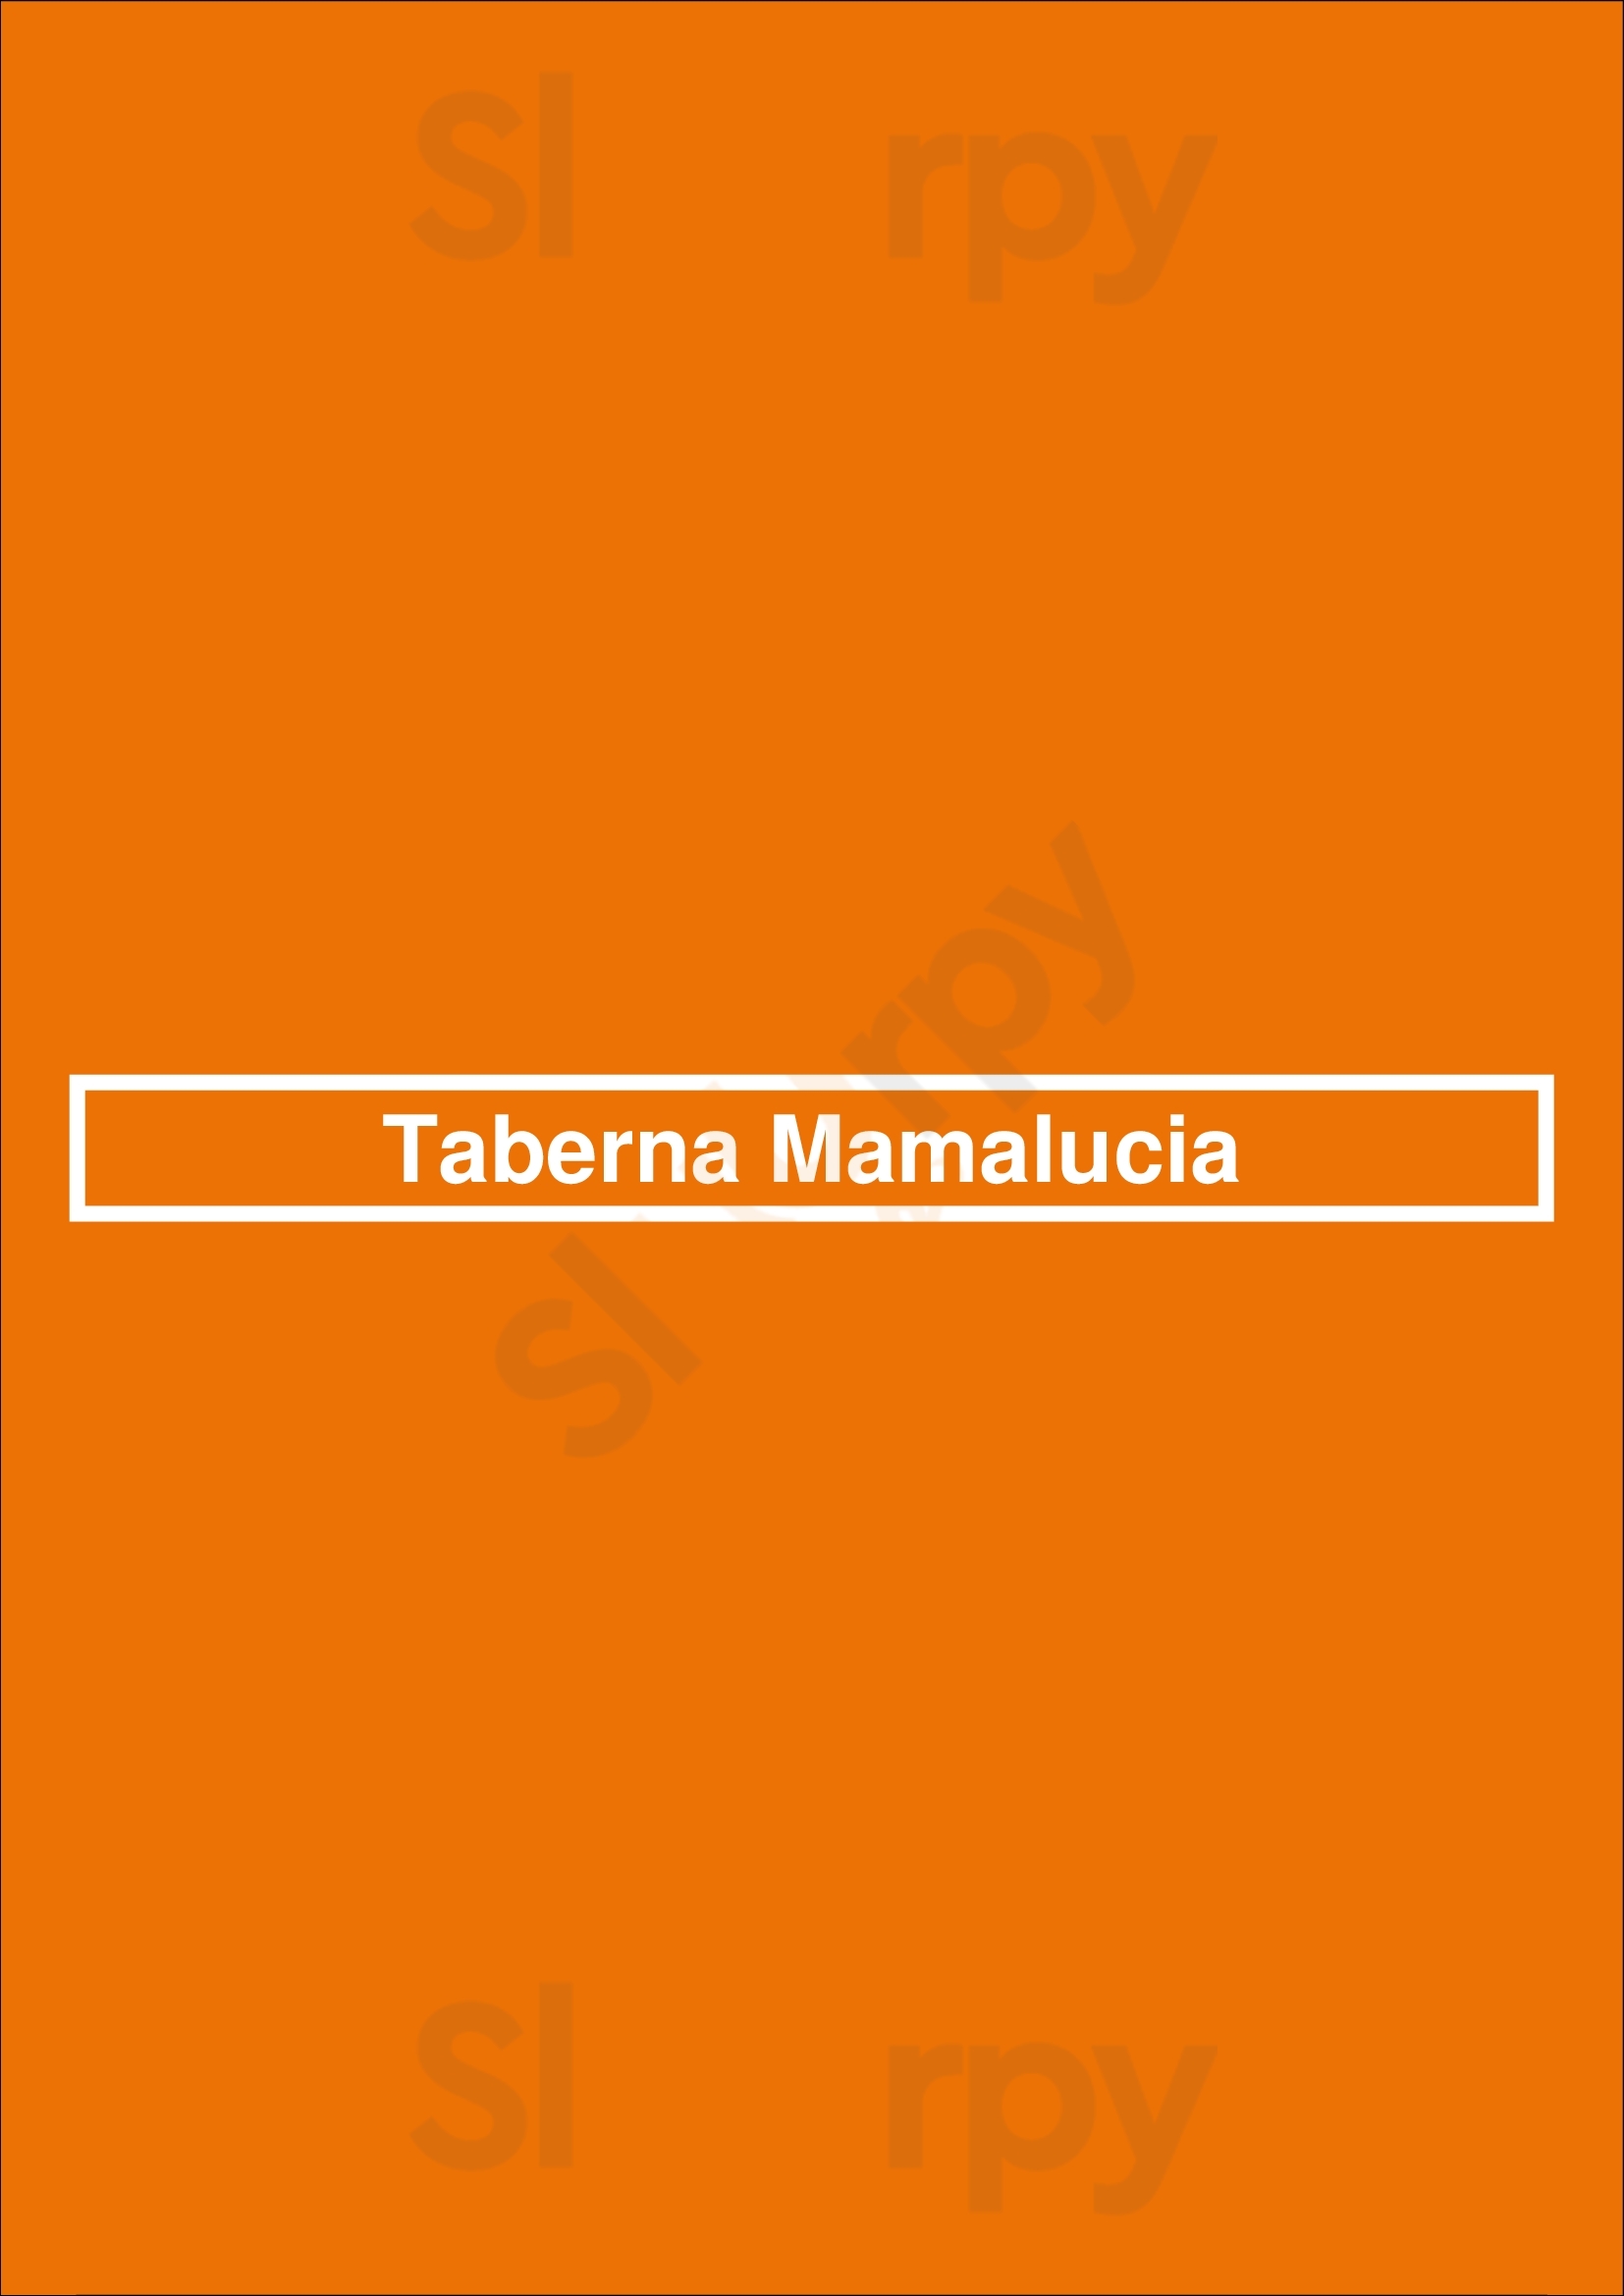 Taberna Mamalucia Majadahonda Menu - 1